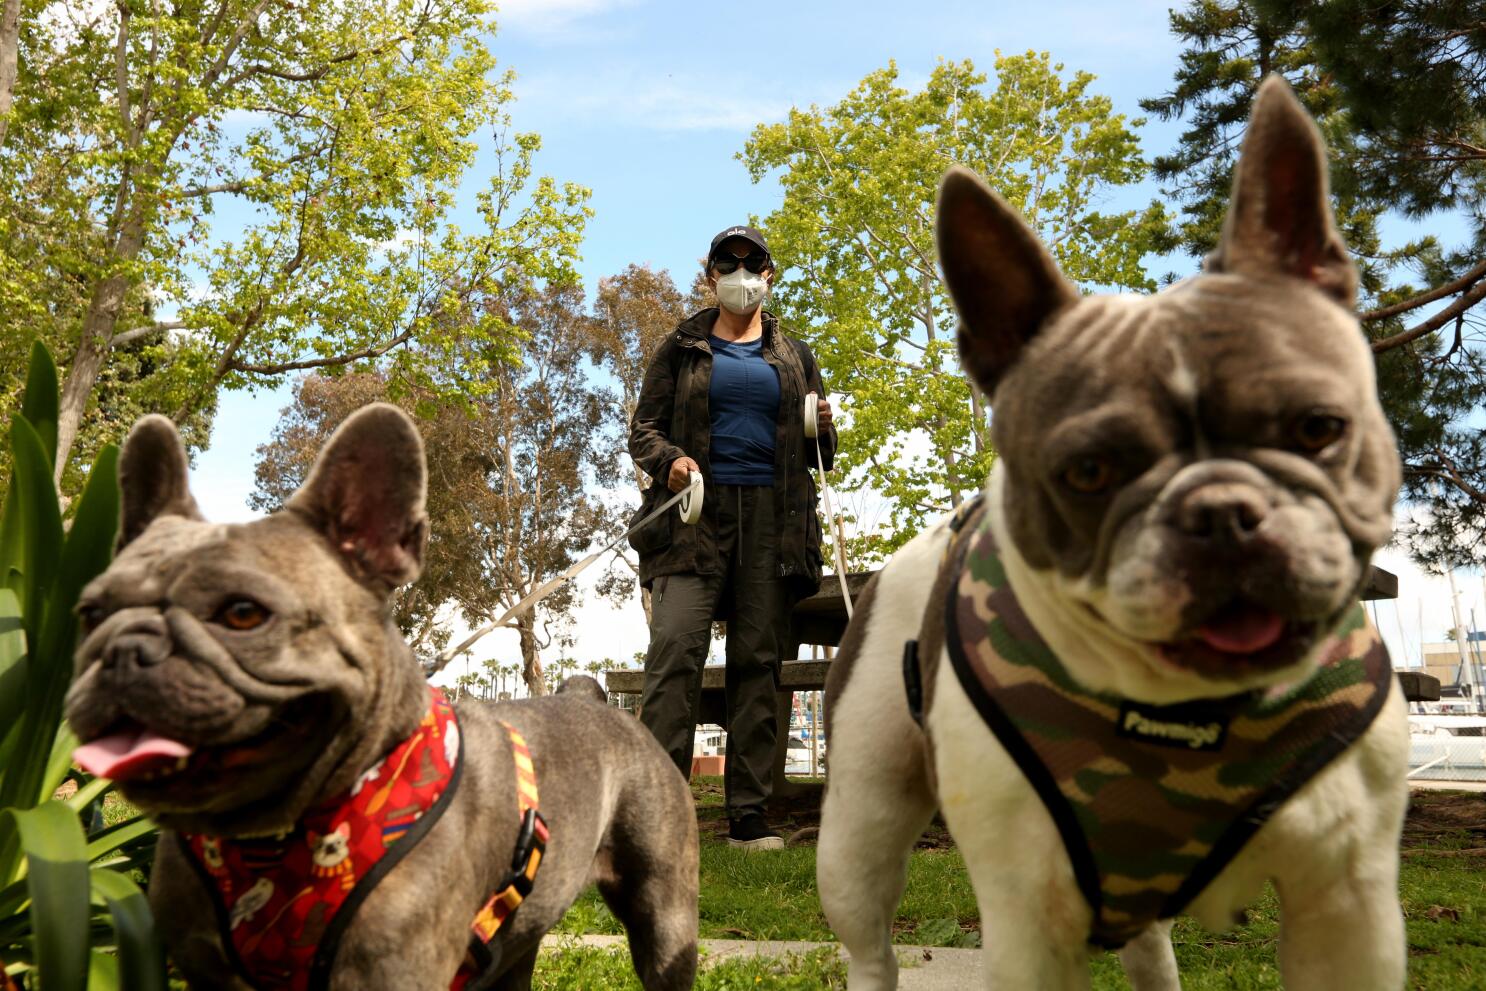 Es El bulldog francés la 2da raza más popular en EU - Los Angeles Times